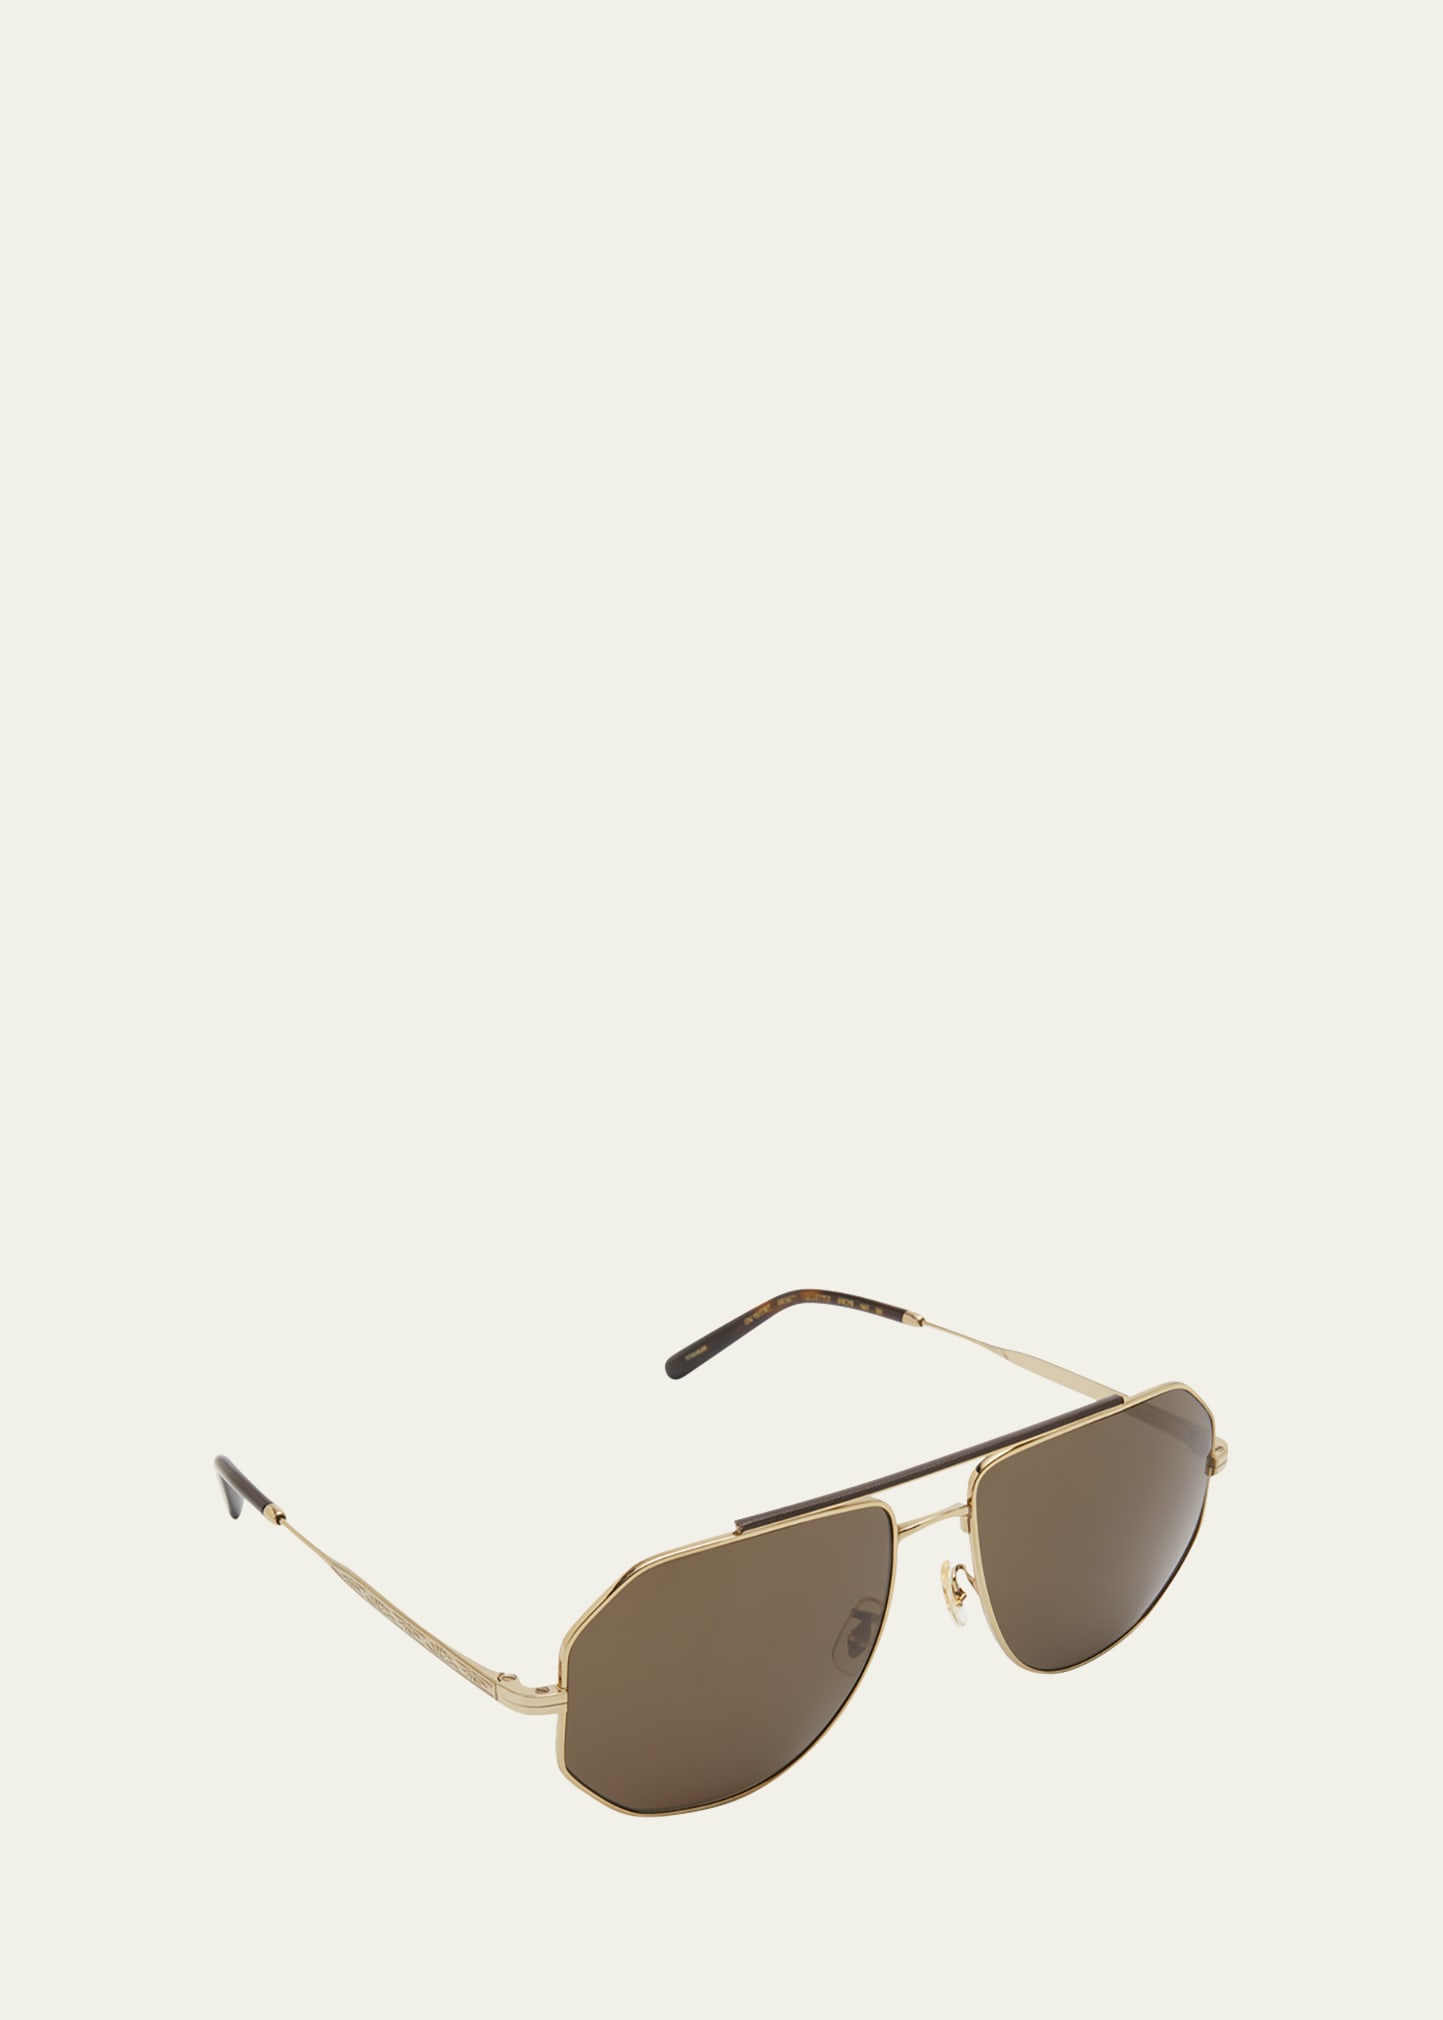 x Brunello Cucinelli Men's Moraldo Double Bridge Sunglasses